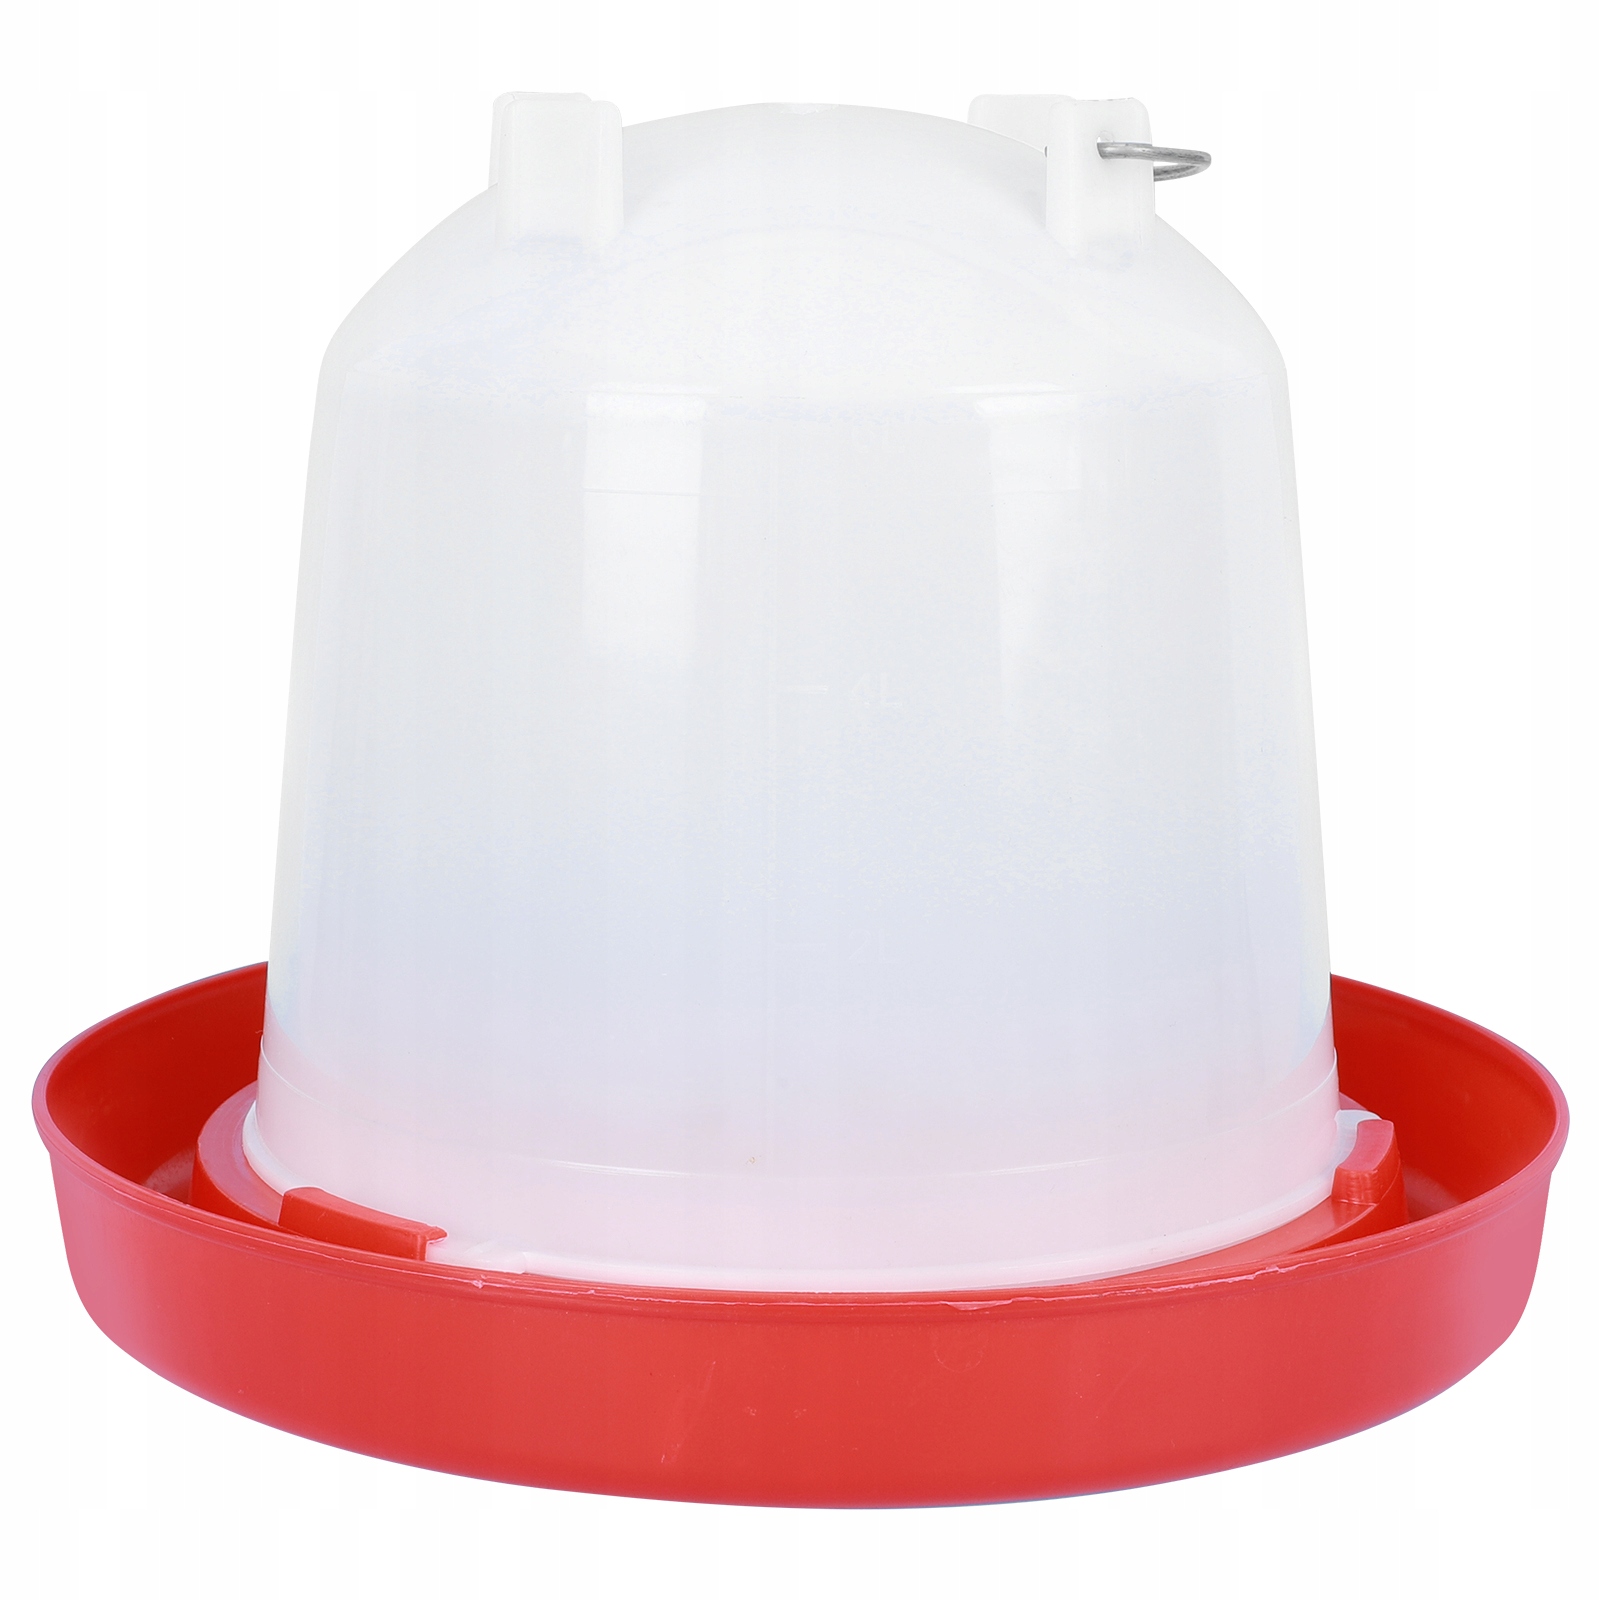 Kuřecí miska na krmení vody kbelík na pití za 254 Kč - Allegro